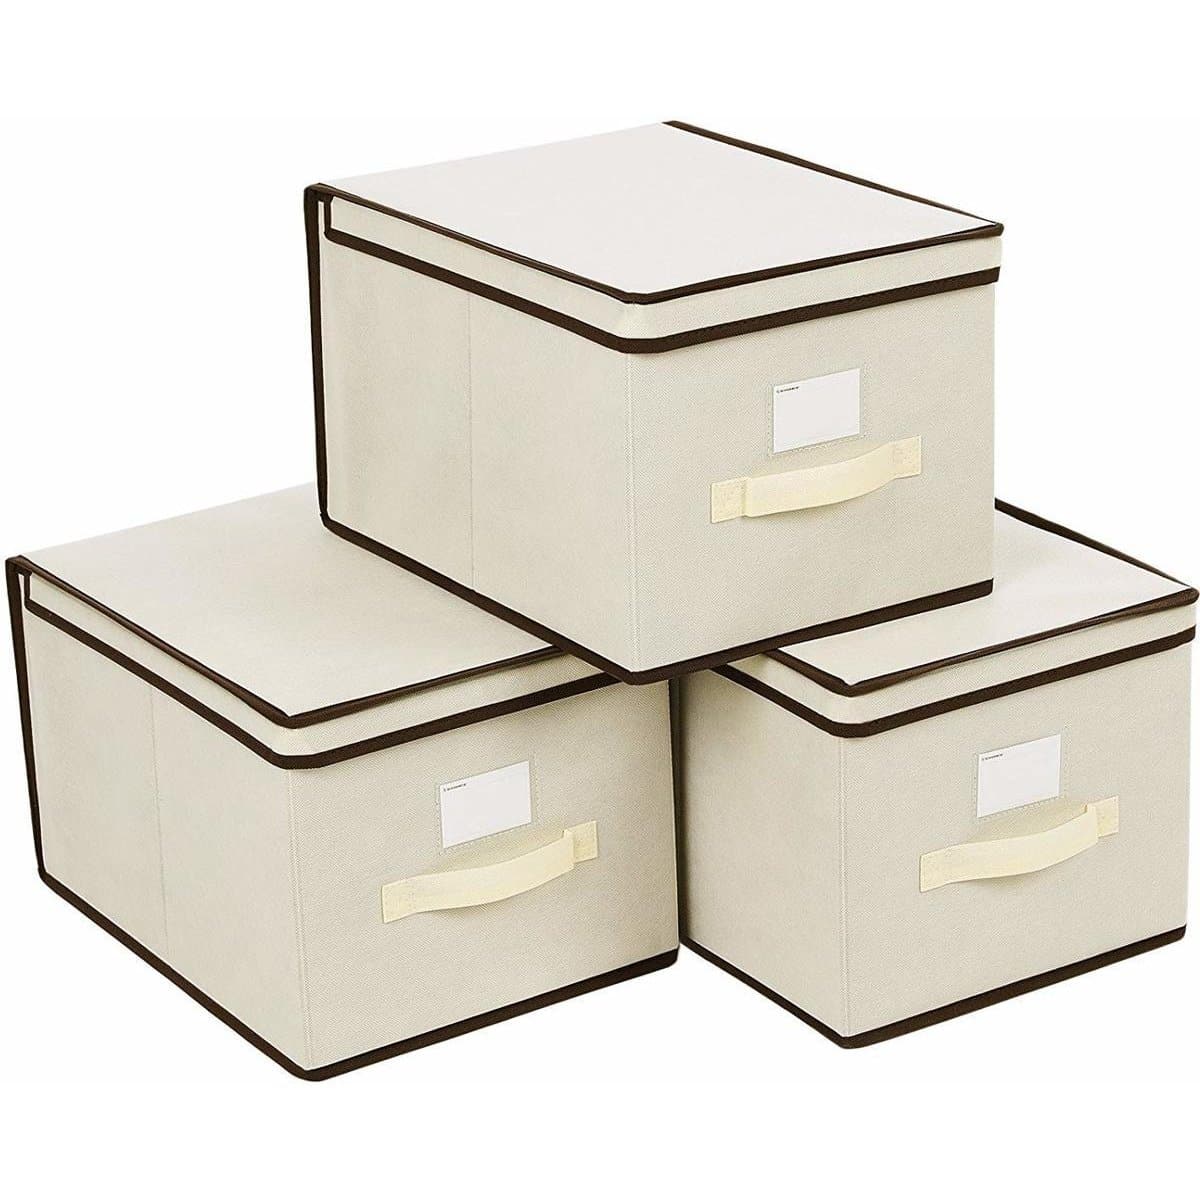 Nancy's Storage Box With Lid - Storage Box For Children - 40 x 30 x 25 cm